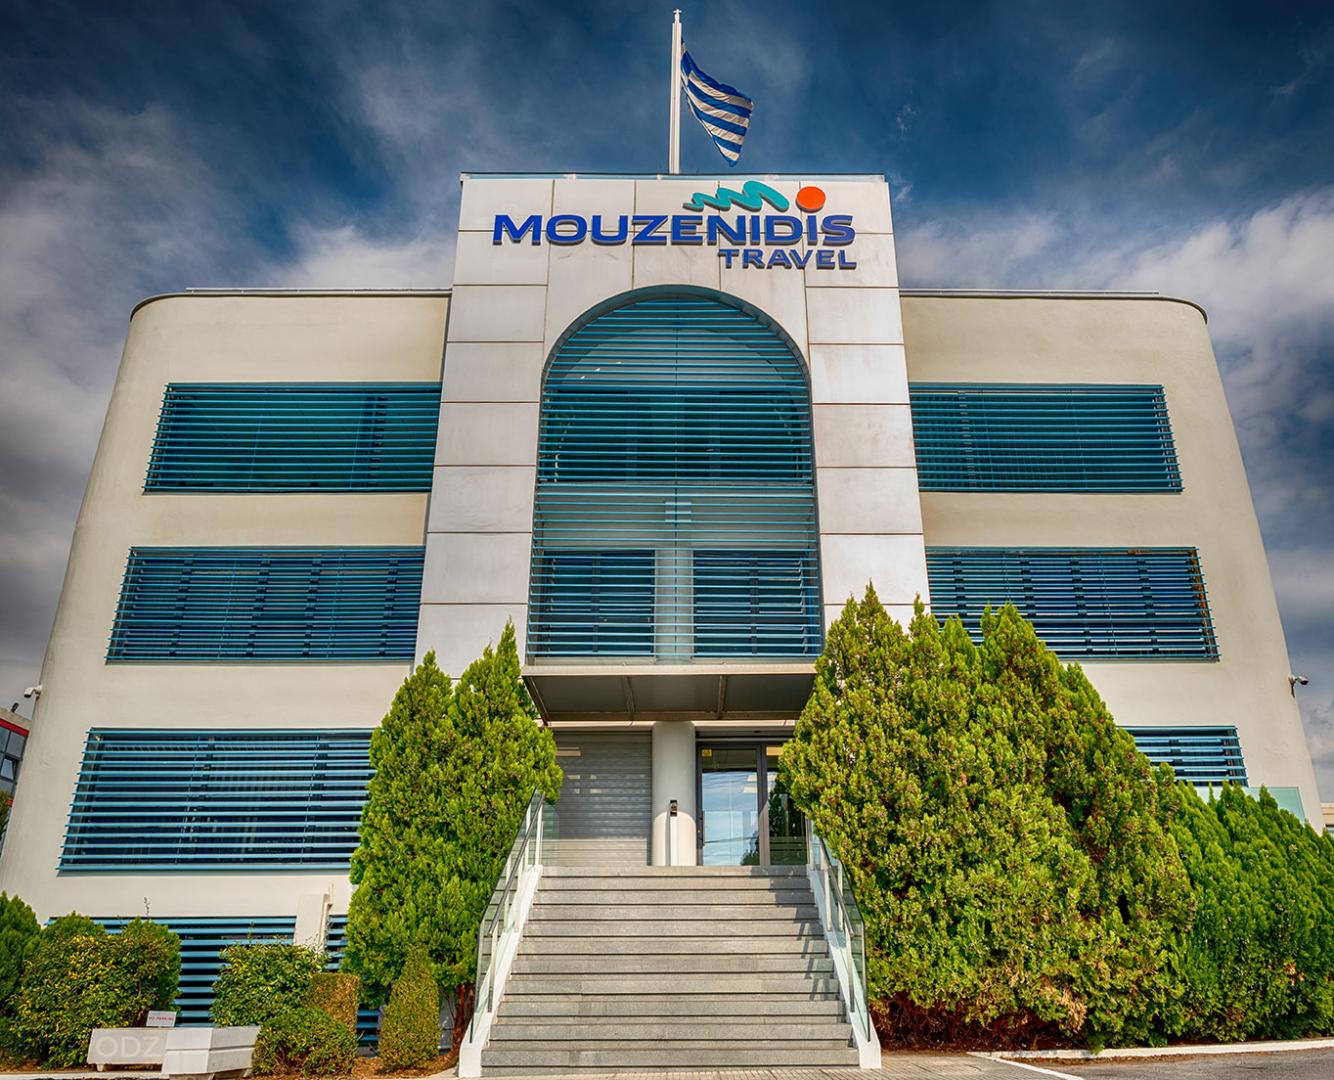 Θα είναι η Mouzenidis Travel το νέο κανόνι στην ελληνική ξενοδοχειακή αγορά;